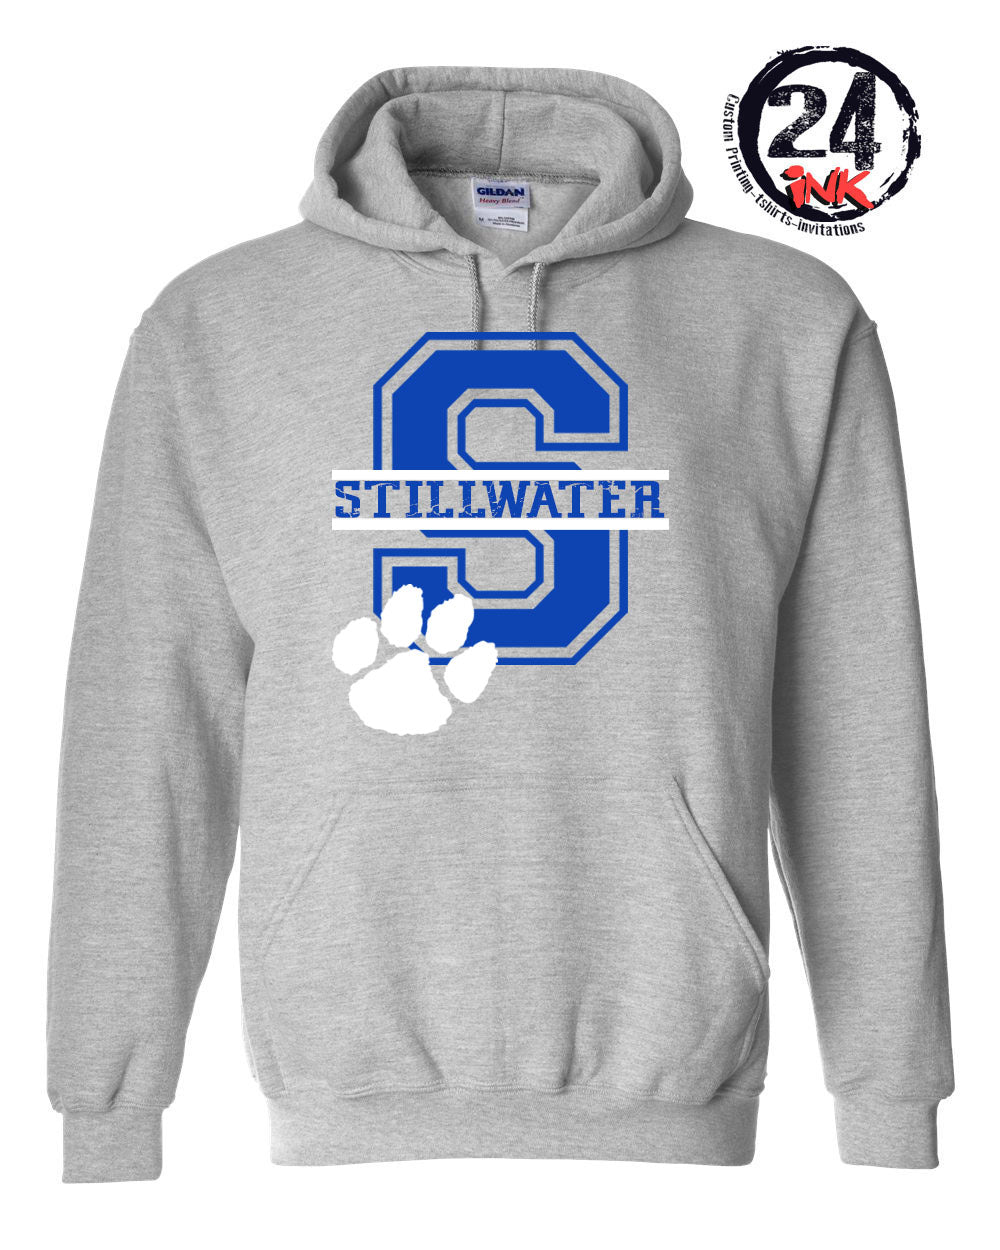 Stillwater Letter Hooded Sweatshirt